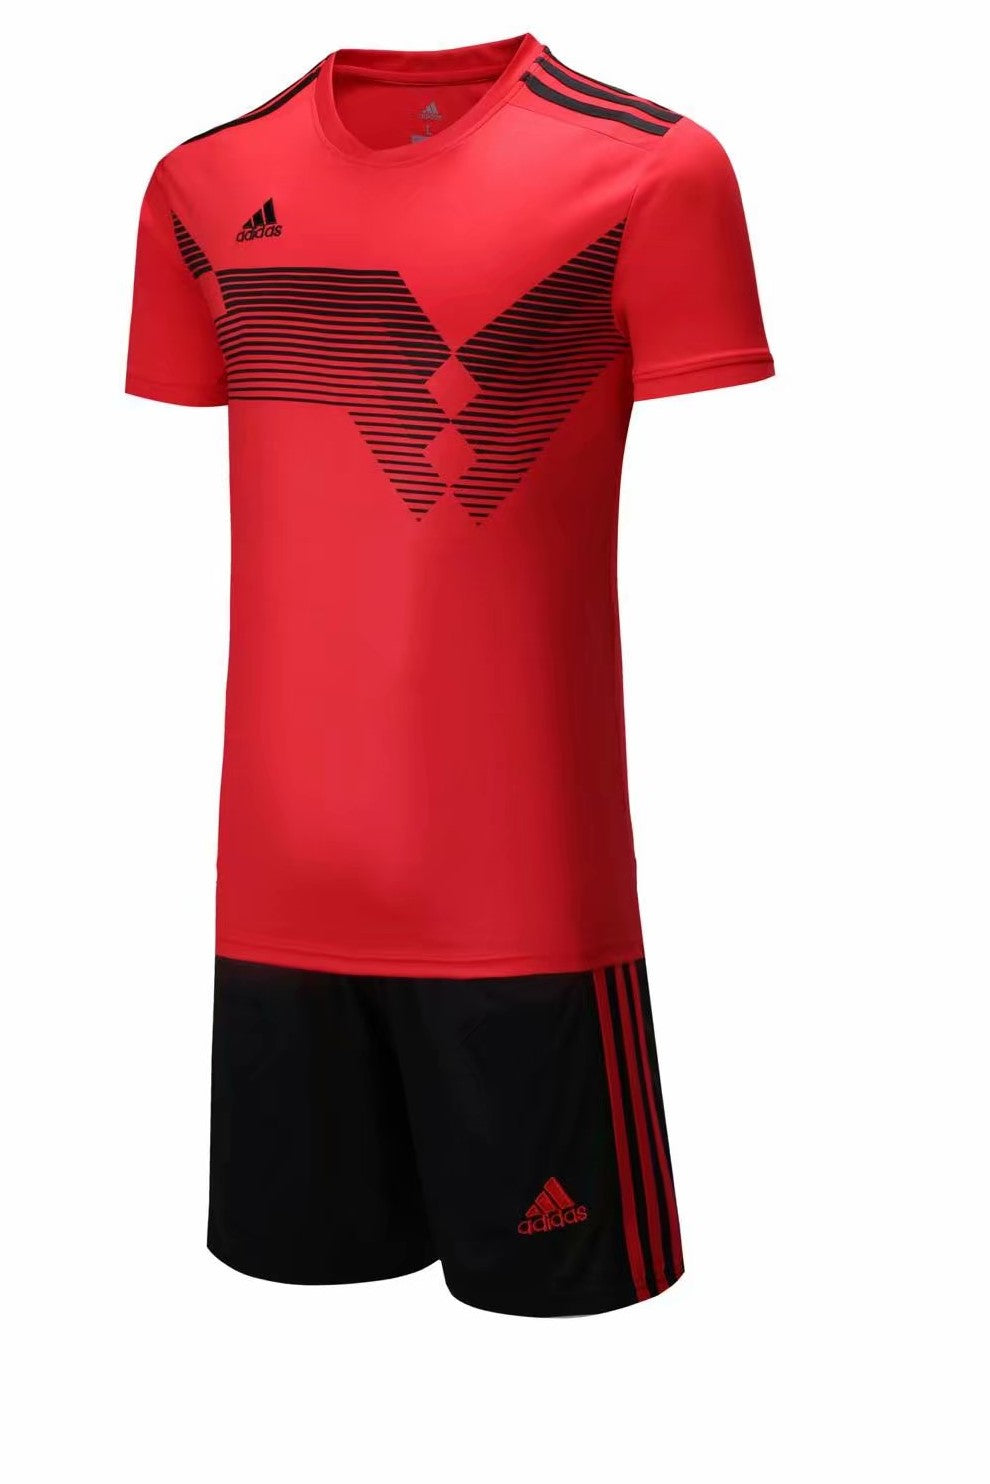 Adidas Full Football Kit Adult Sizes 